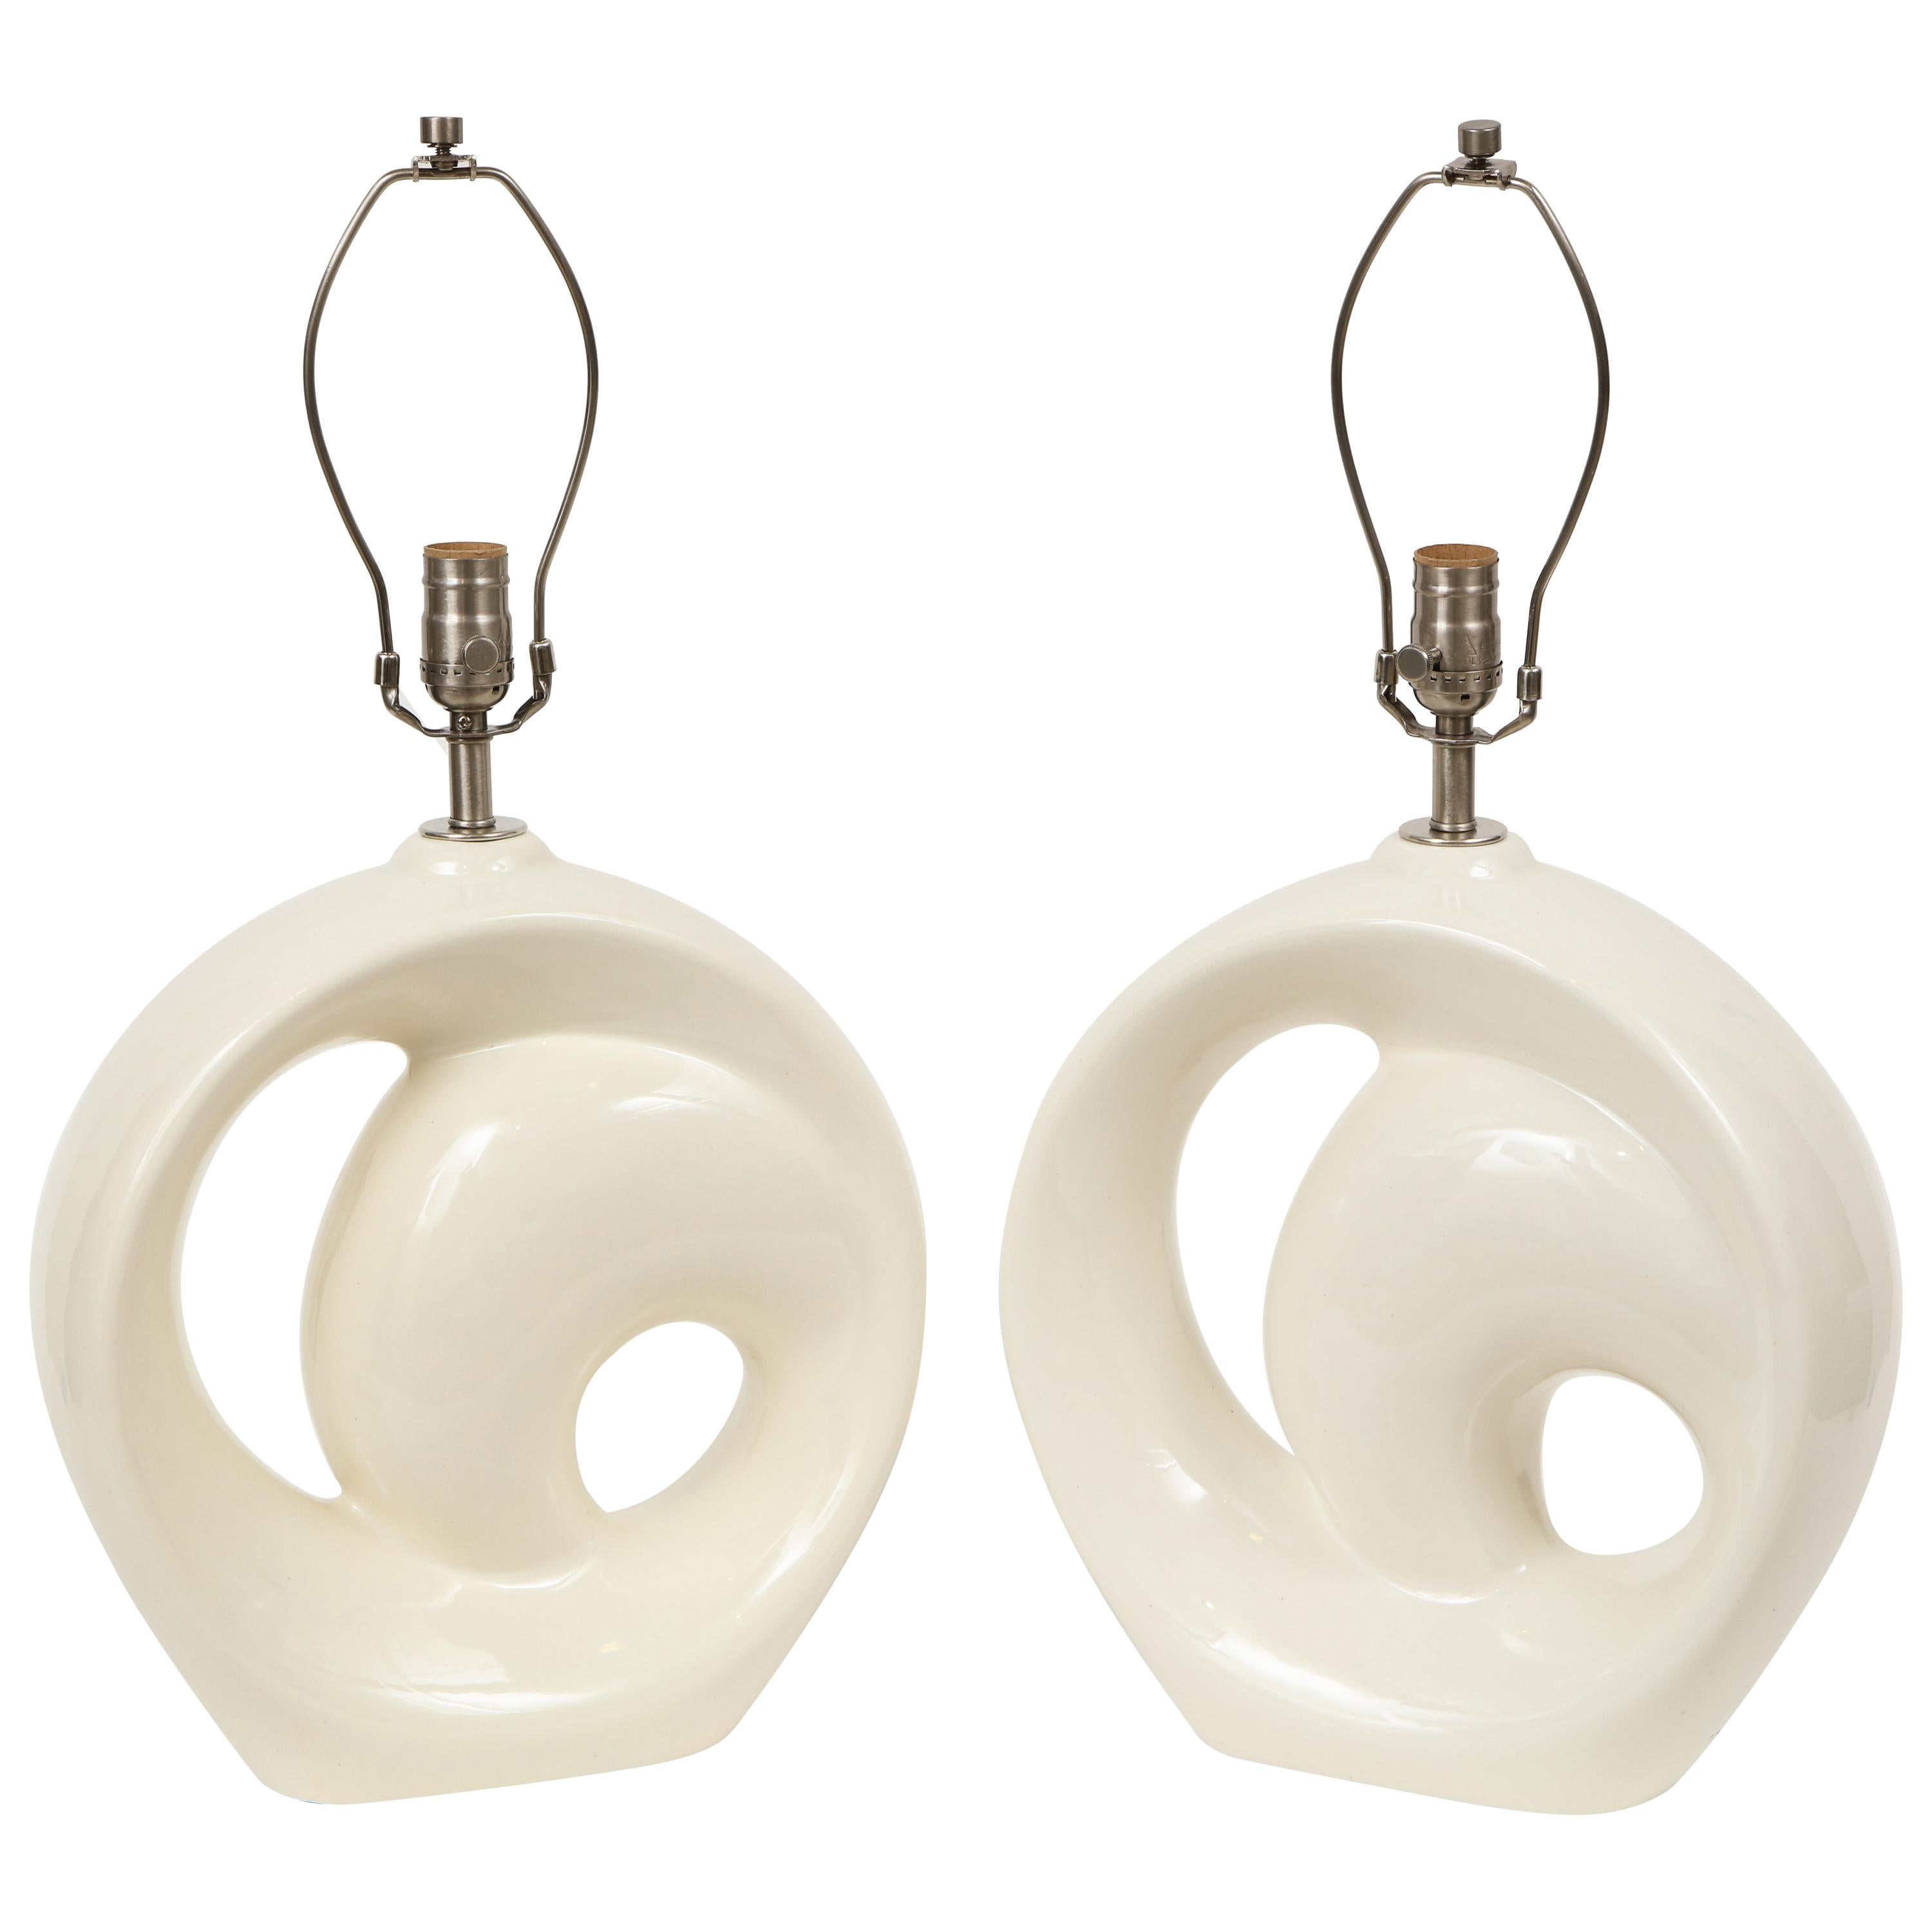 Modernist Bone White Porcelain Lamps